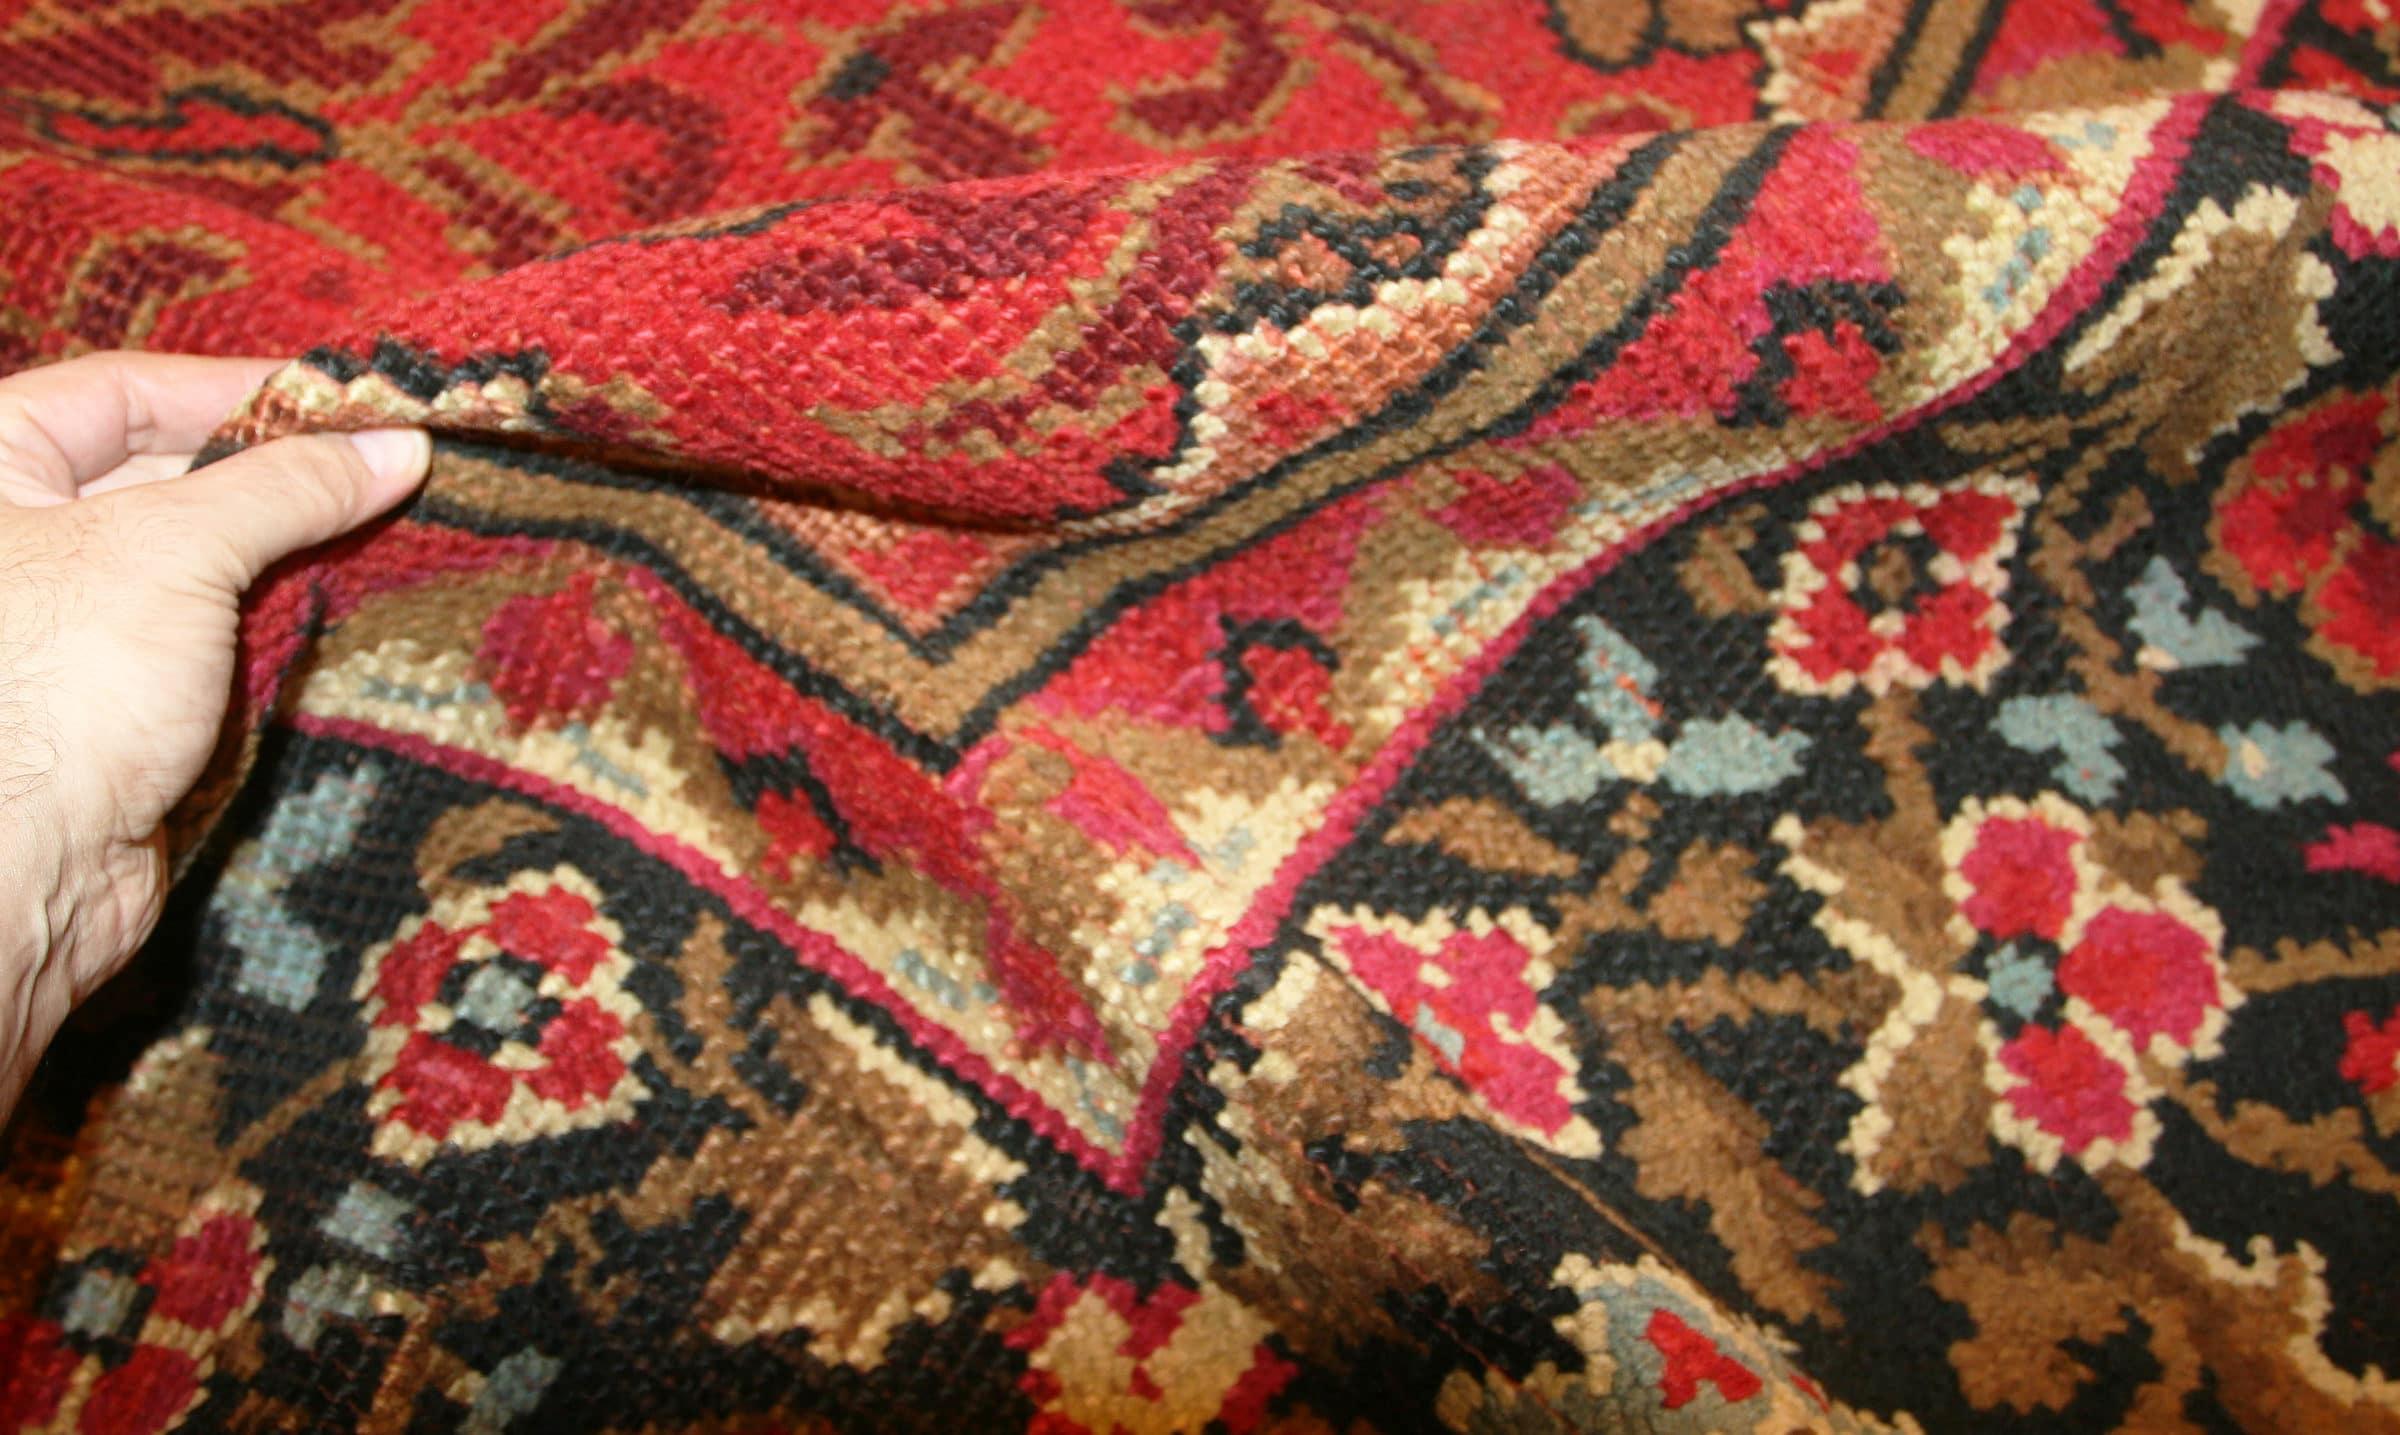 Magnifique tapis irlandais Donegal ancien de grande taille, pays d'origine / type de tapis : Tapis irlandais, vers les années 1930. Taille : 15 ft 5 in x 16 ft 8 in (4,7 m x 5,08 m)

